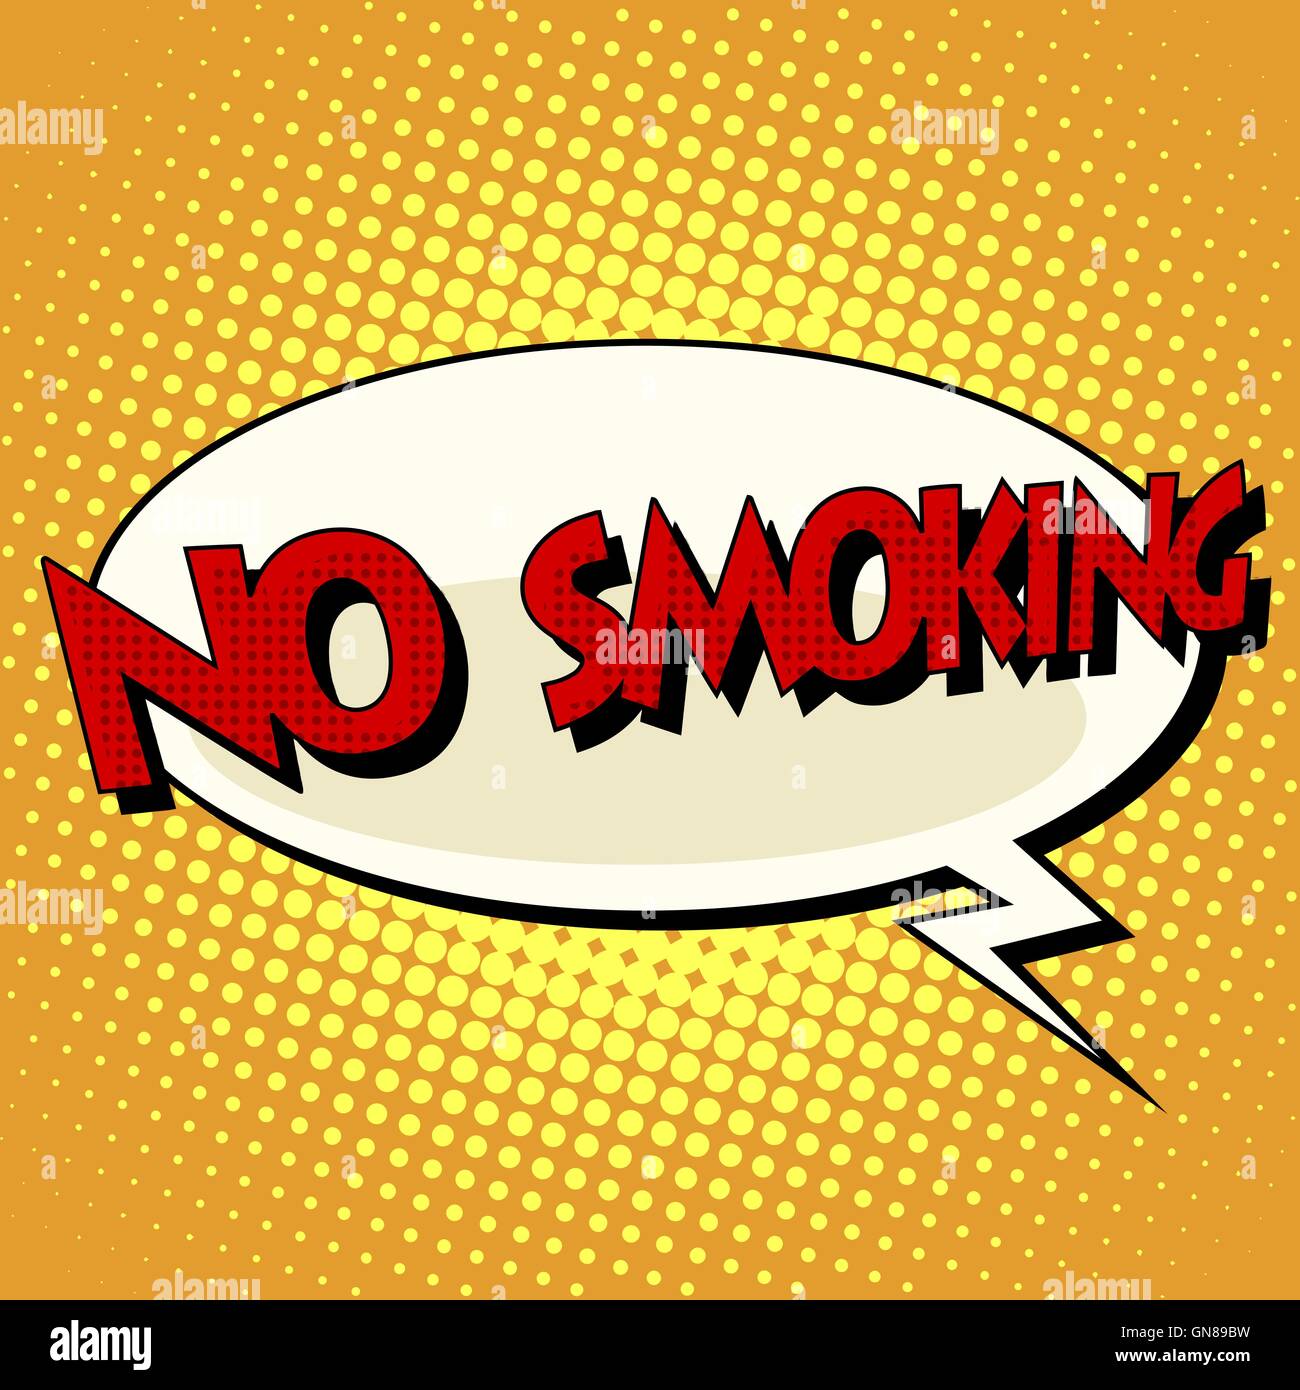 no smoking comic book bubble text Stock Vector